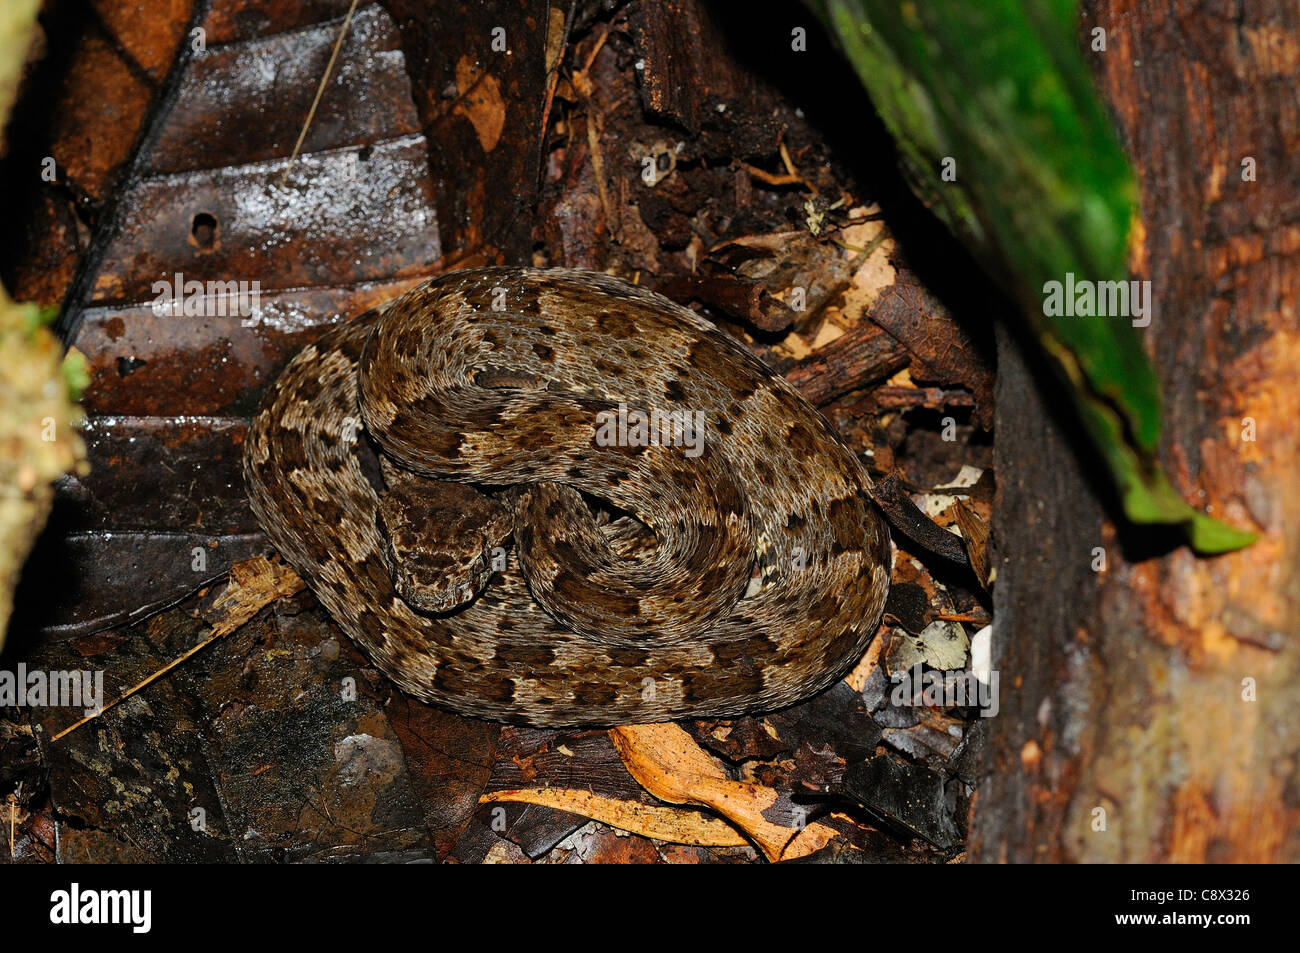 Fer de Lance Snake (Bothrops asper) giovani snake rannicchiato sul suolo della foresta, tra figliata di foglia, Yasuni National Park, Ecuador Foto Stock